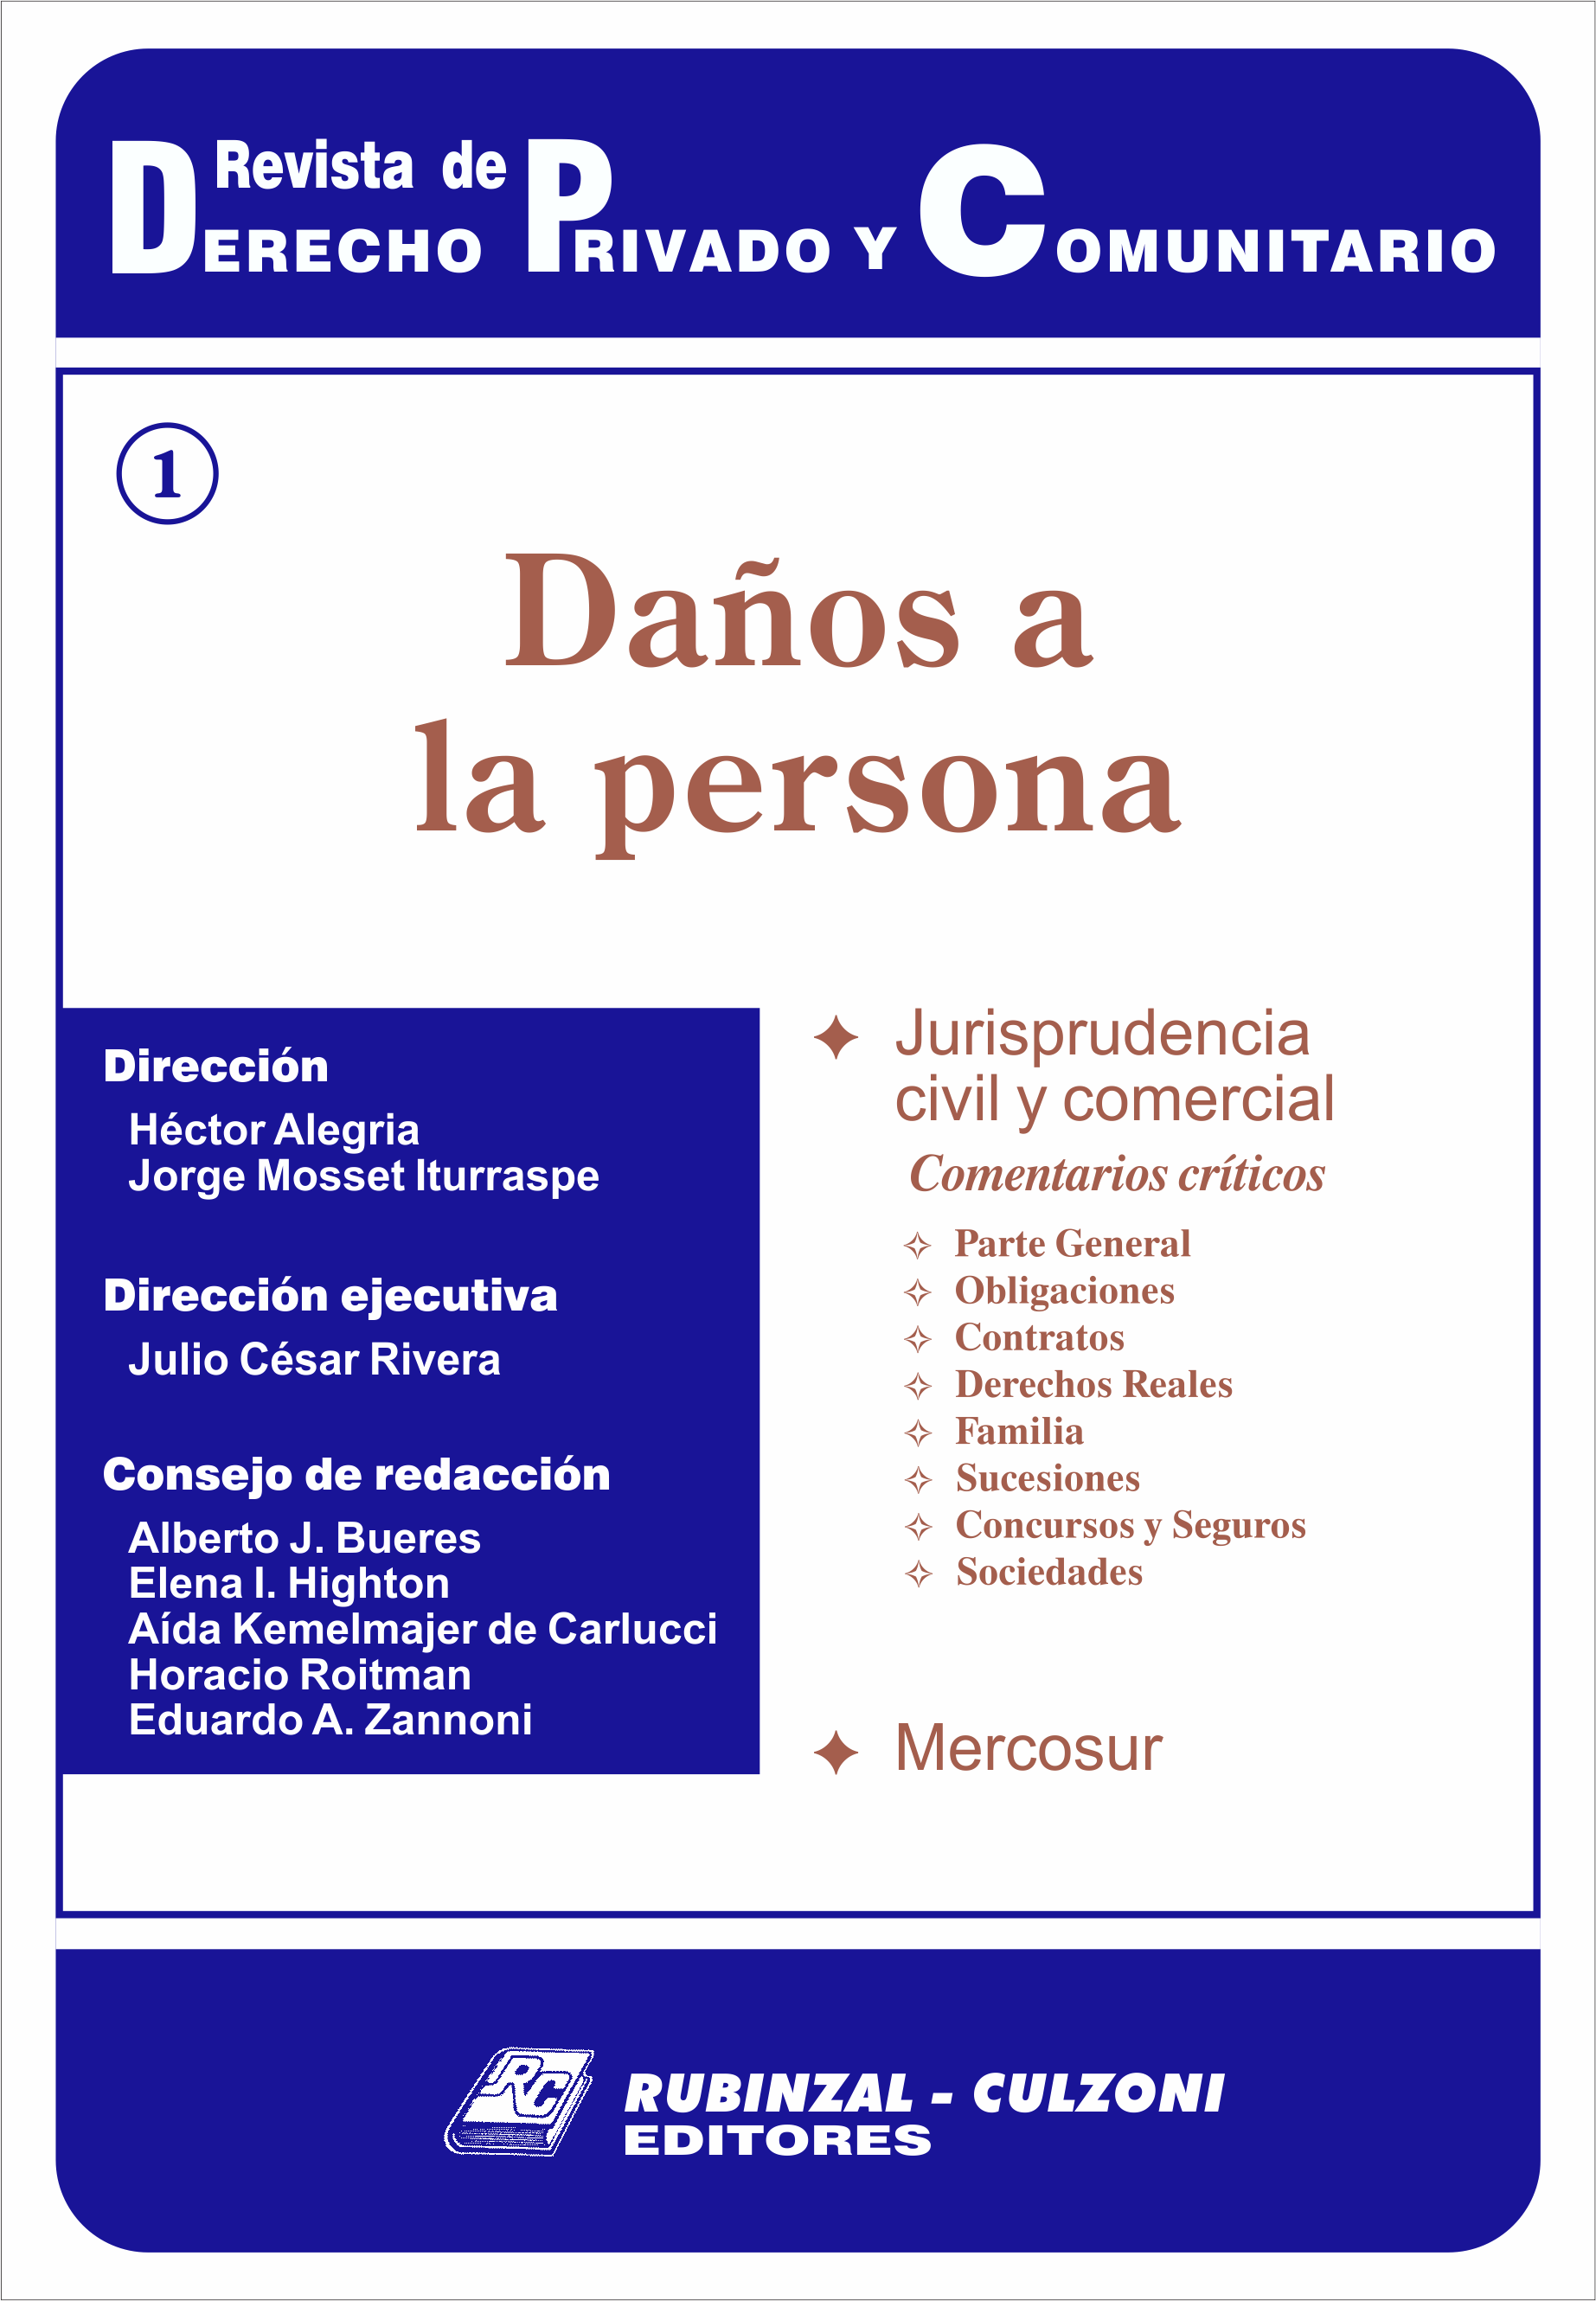 Revista de Derecho Privado y Comunitario - Daños a la persona